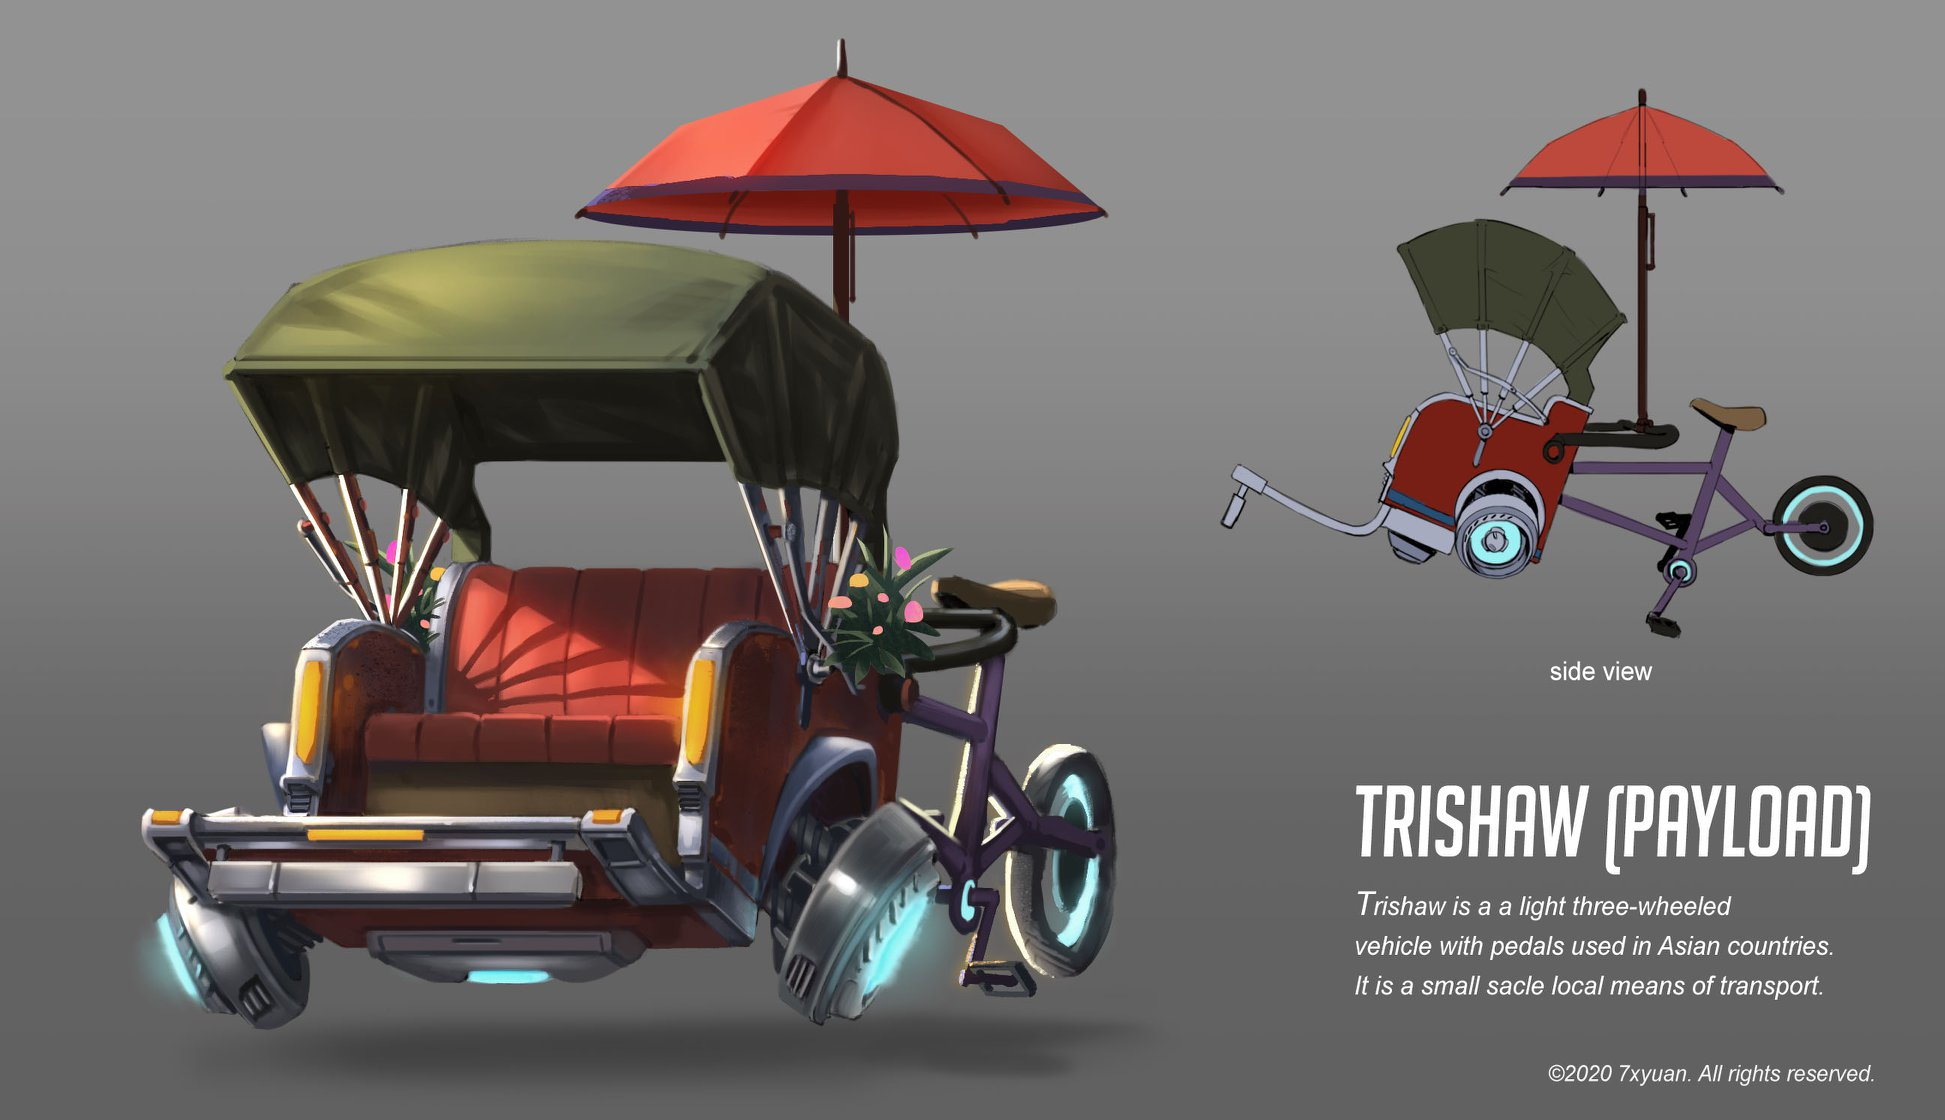 Modern rickshaws